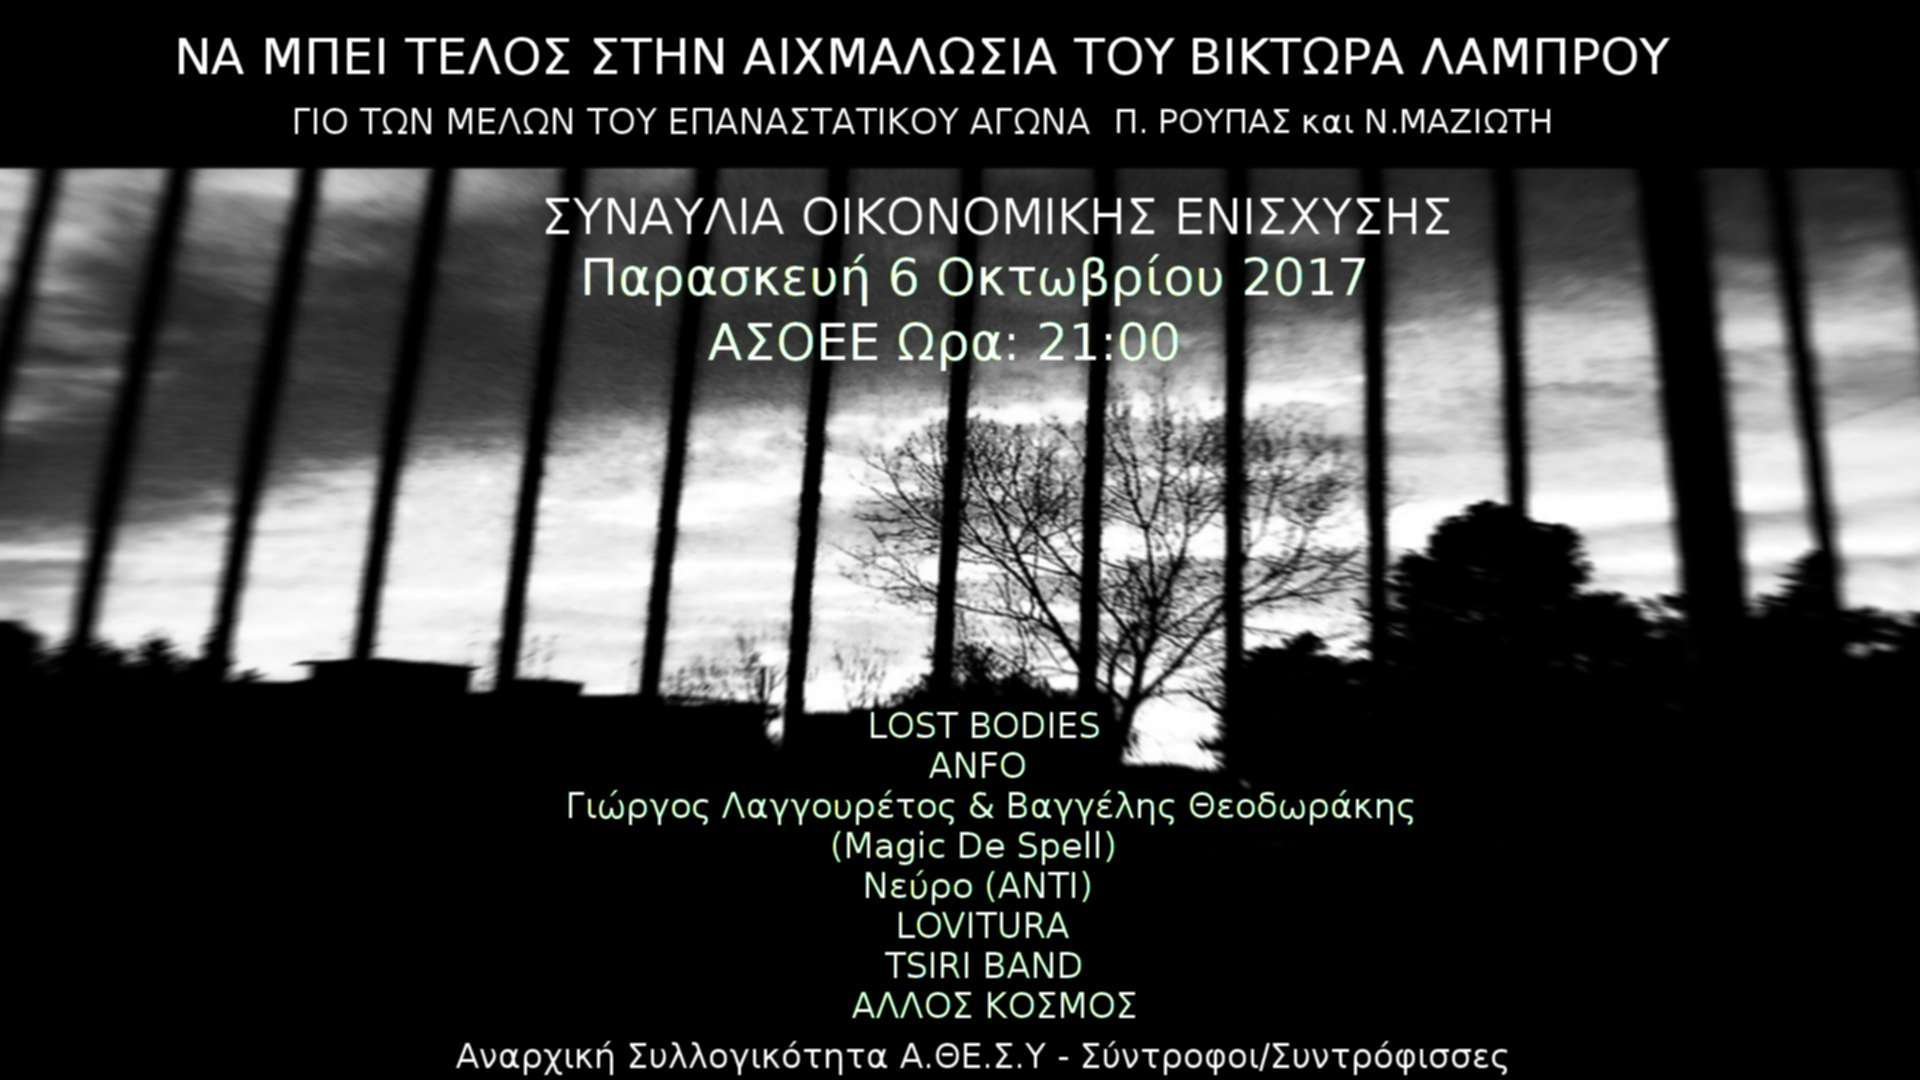 Αθήνα: Συναυλία οικονομικής ενίσχυσης του Βίκτωρα-Λάμπρου [Παρασκευή 06/10, 21:00]